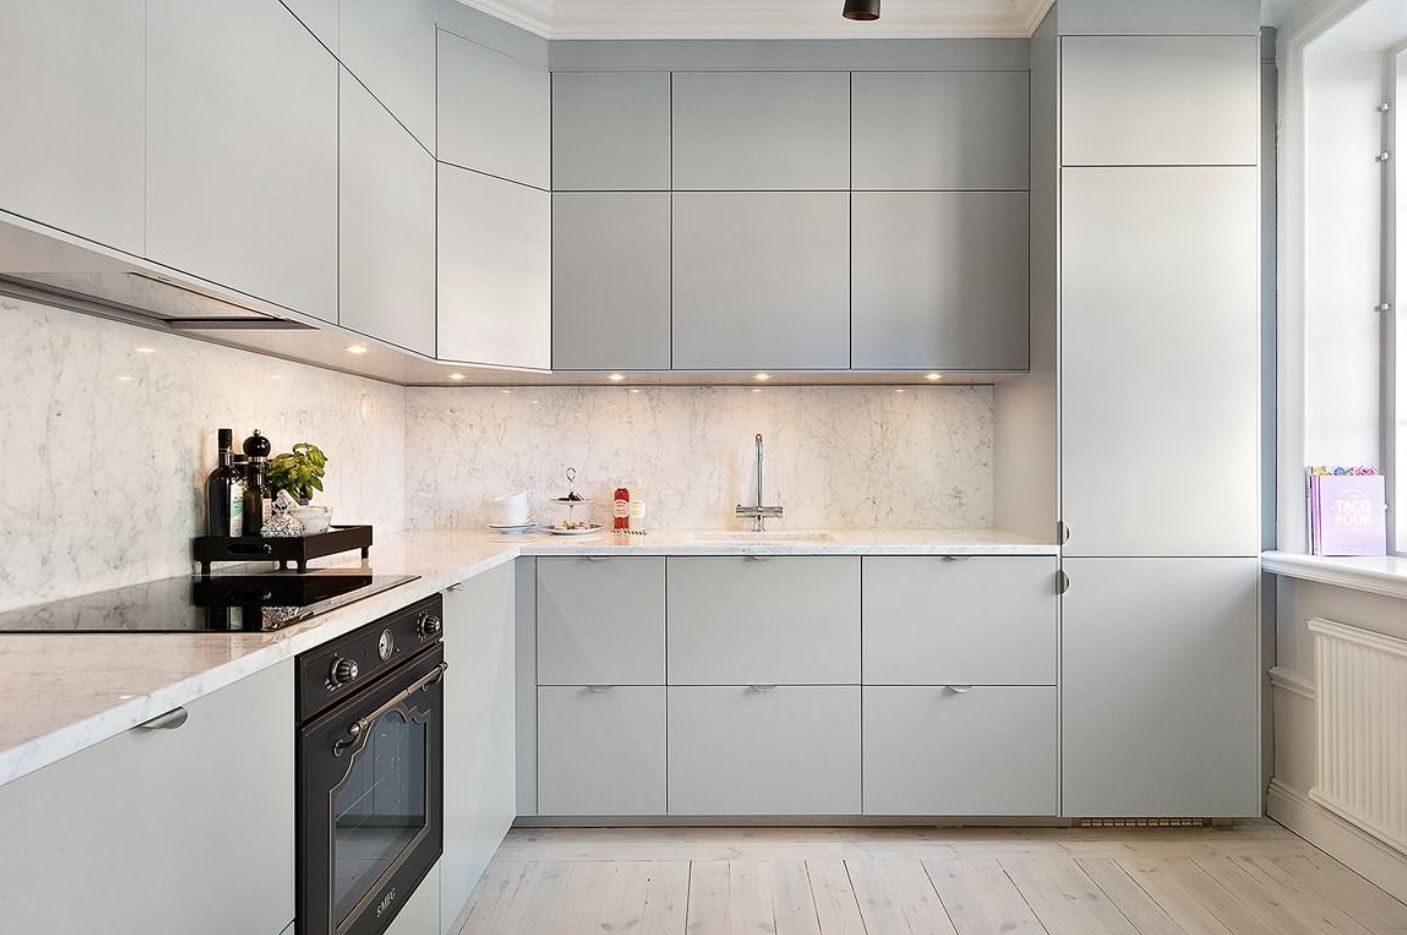 Gray modular kitchen furniture set